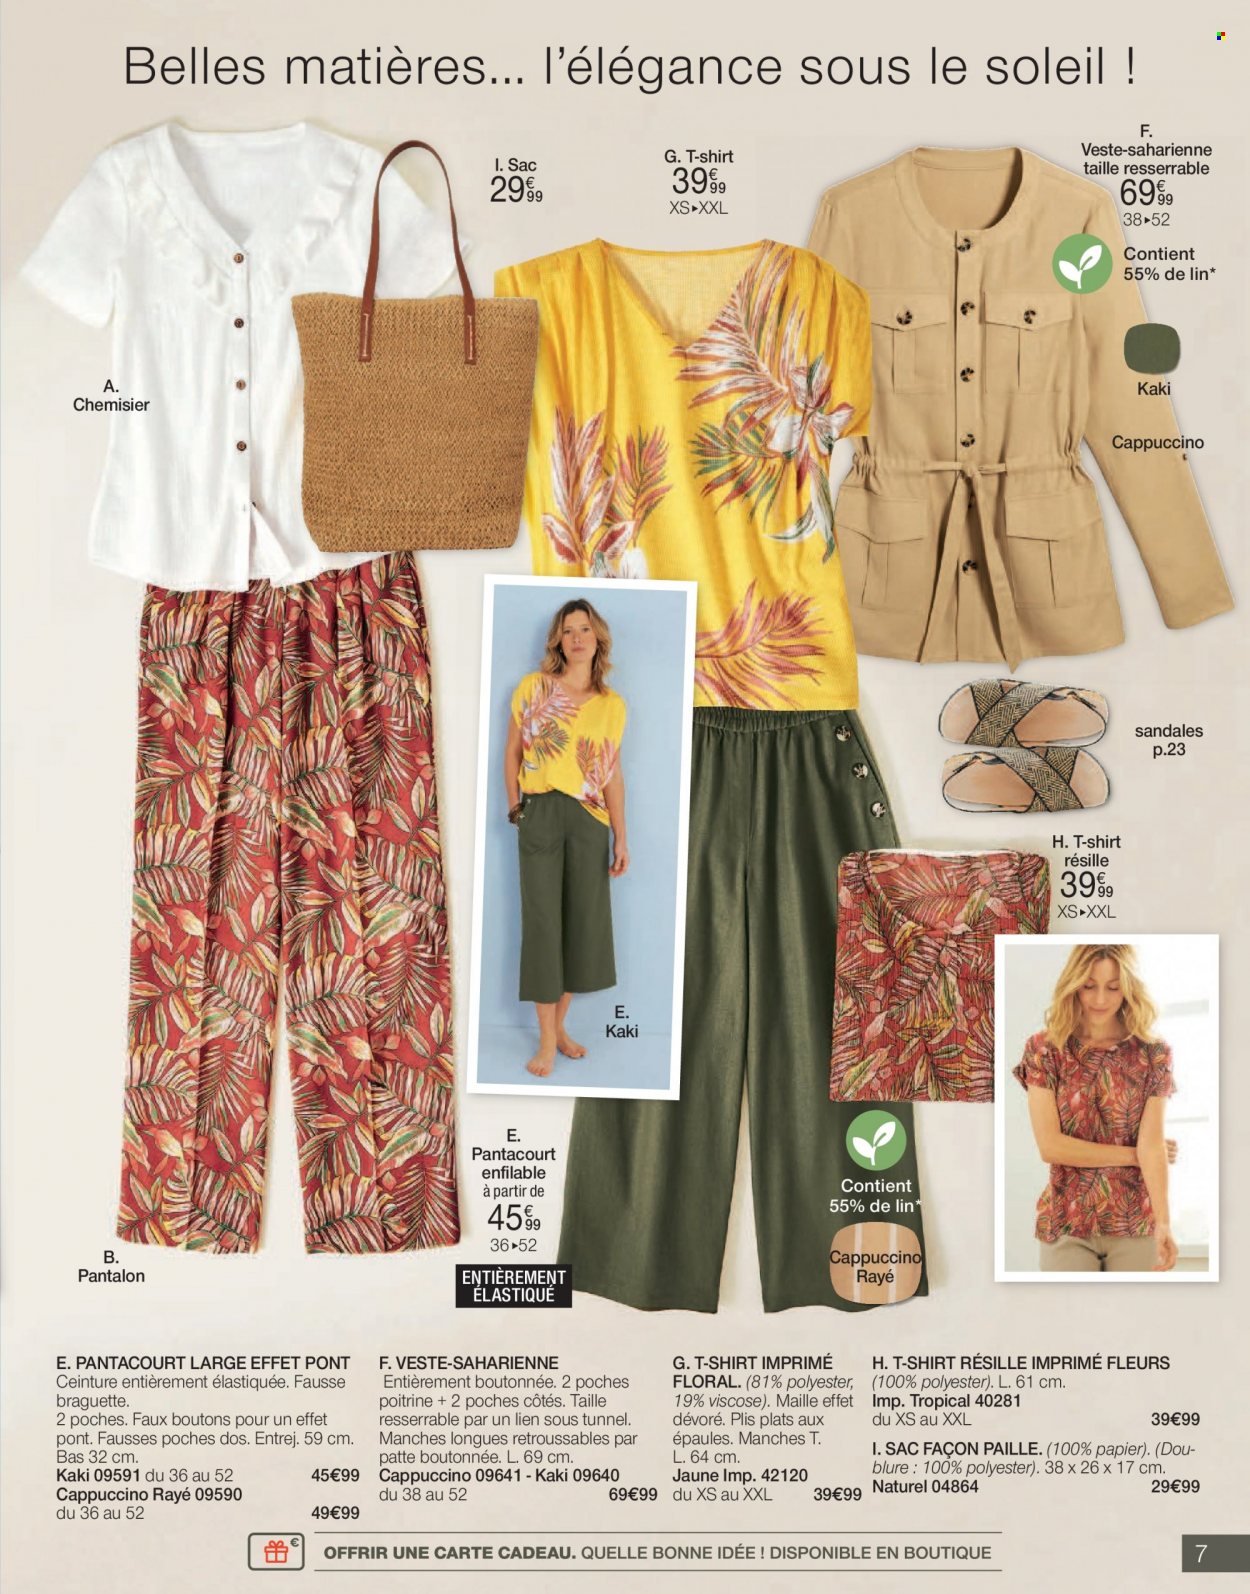 thumbnail - Catalogue Damart - Produits soldés - sandales, veste, pantalon, pantacourt, robe, chemise, chemisier, t-shirt, sac, ceinture. Page 7.